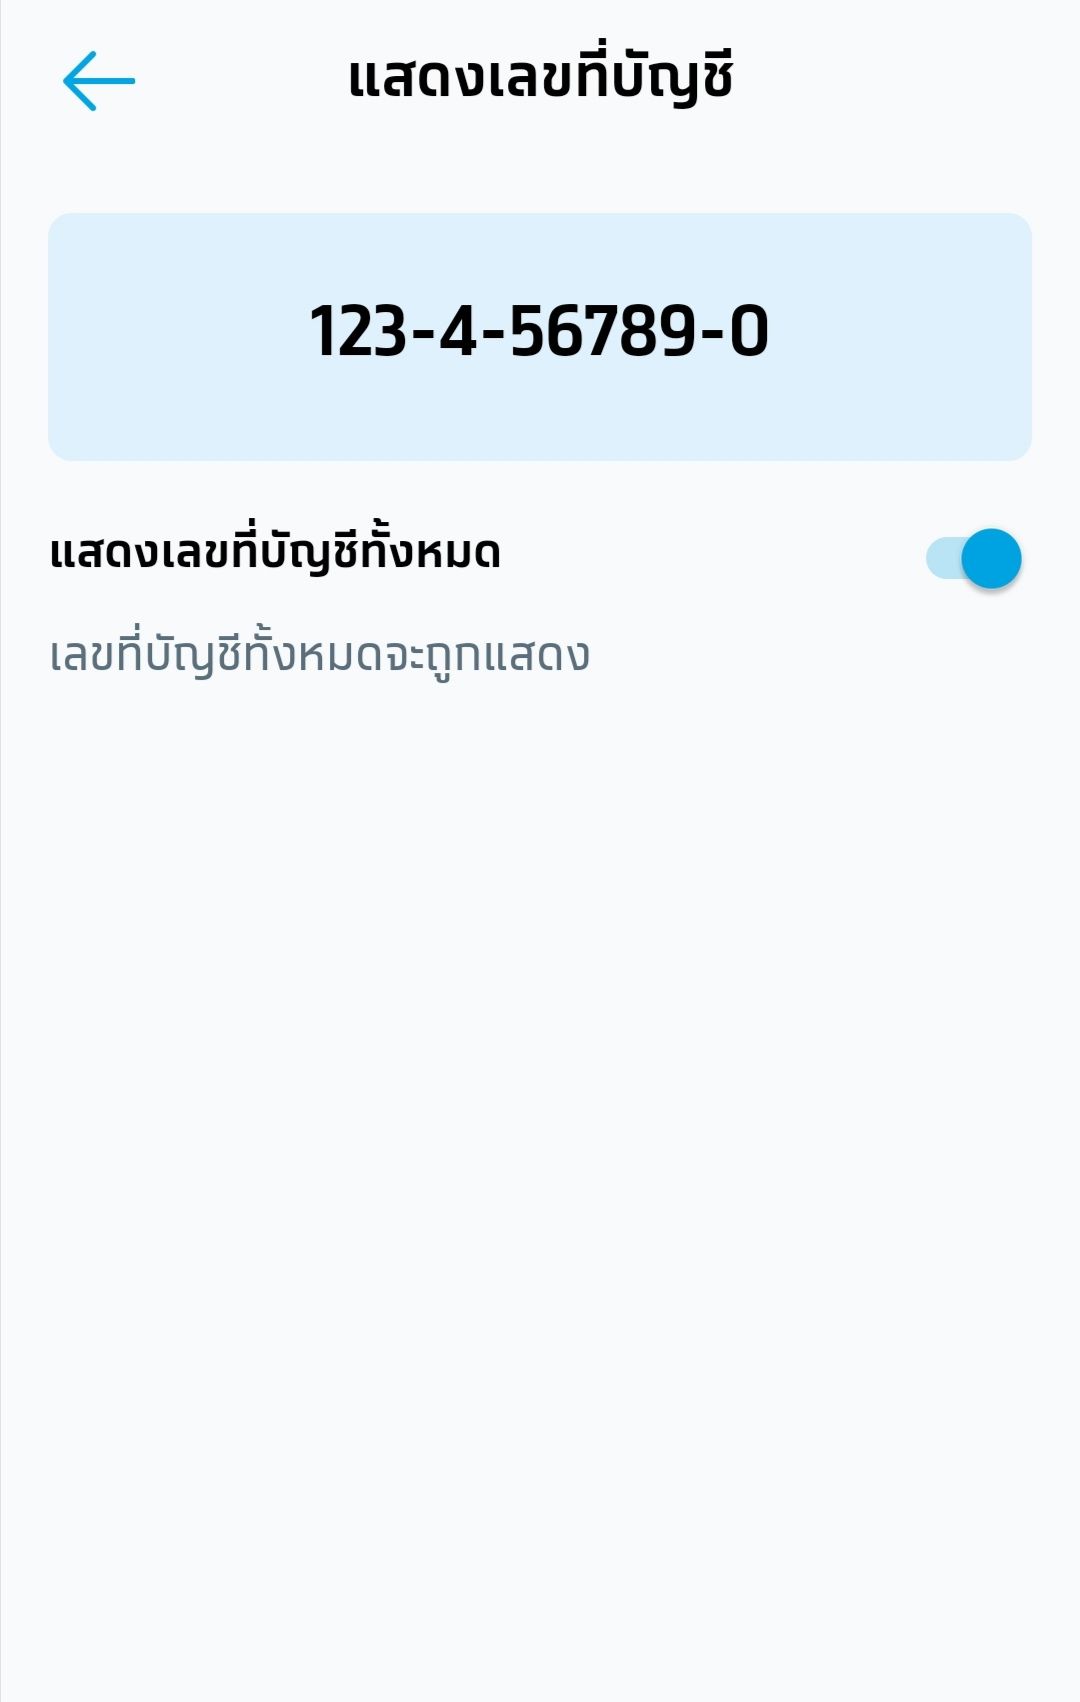 เปิดบัญชีกรุงไทยออนไลน์ แล้ว ดูเลขบัญชีกรุงไทยไม่ได้ กดดูแล้วเป็น  123-4-56789-0 - Pantip